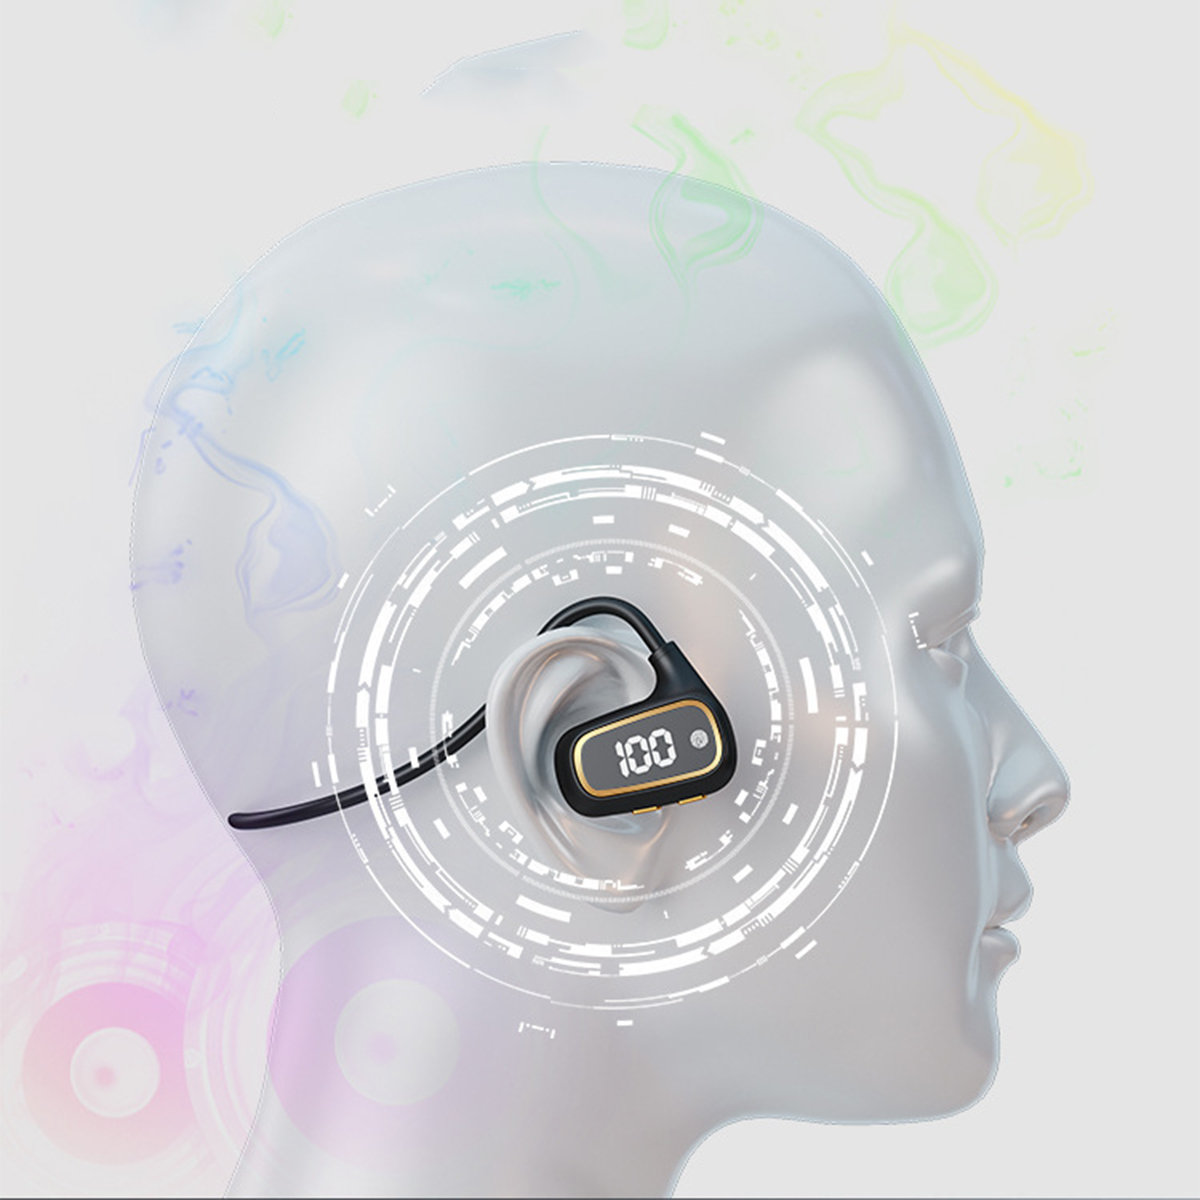 Leicht, & Knochenleitung Bluetooth-Kopfhörer Wireless, - Neckband Lila Sportlich BRIGHTAKE Kopfhörer